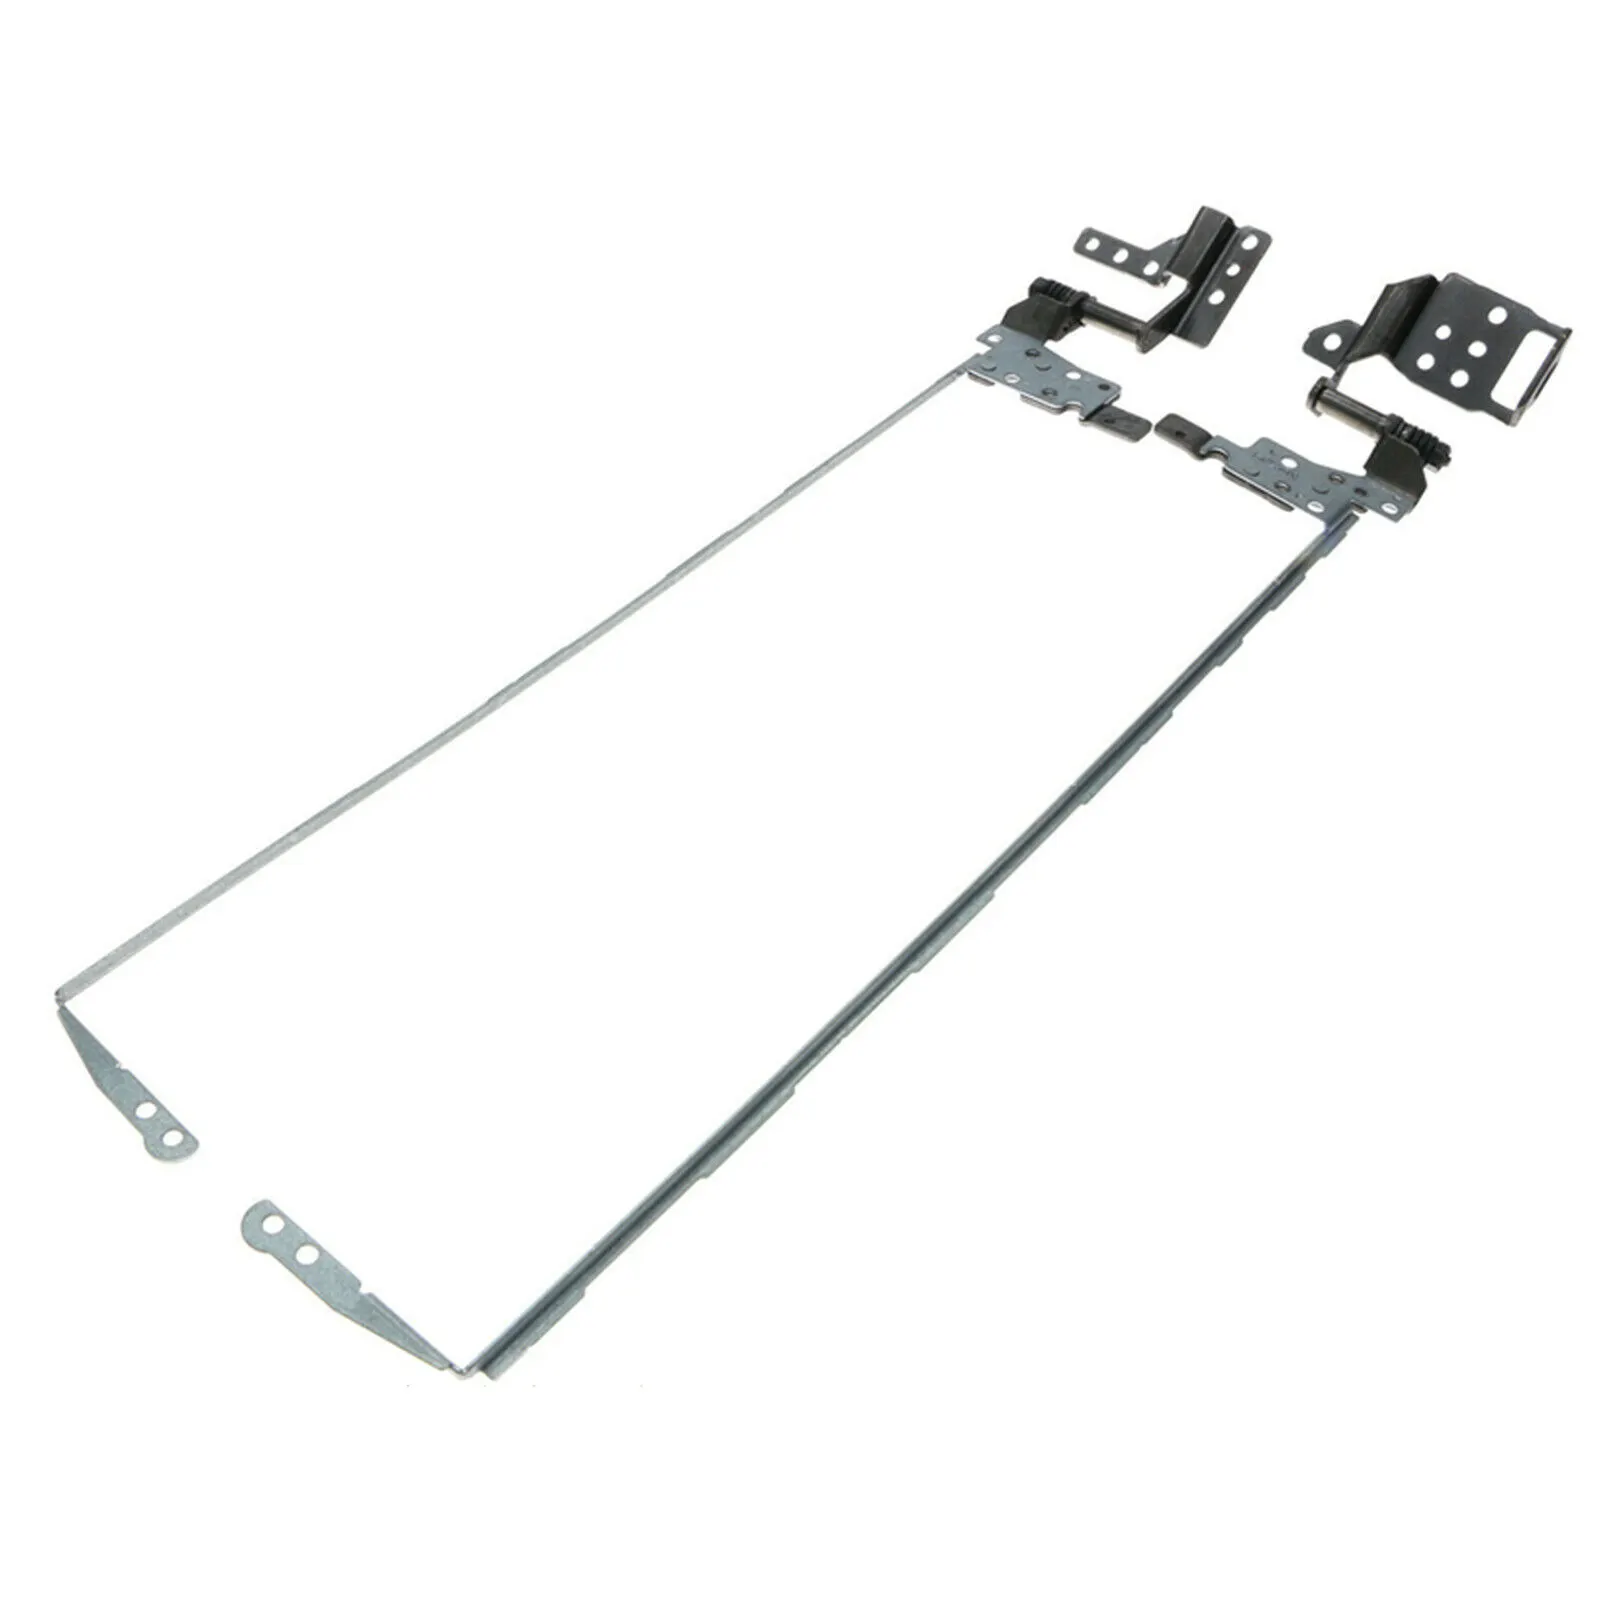 Set Engsel Lcd untuk Acer Nitro 5 AN515-41 AN515-51 AN515-42 AN515-53 AM211000200